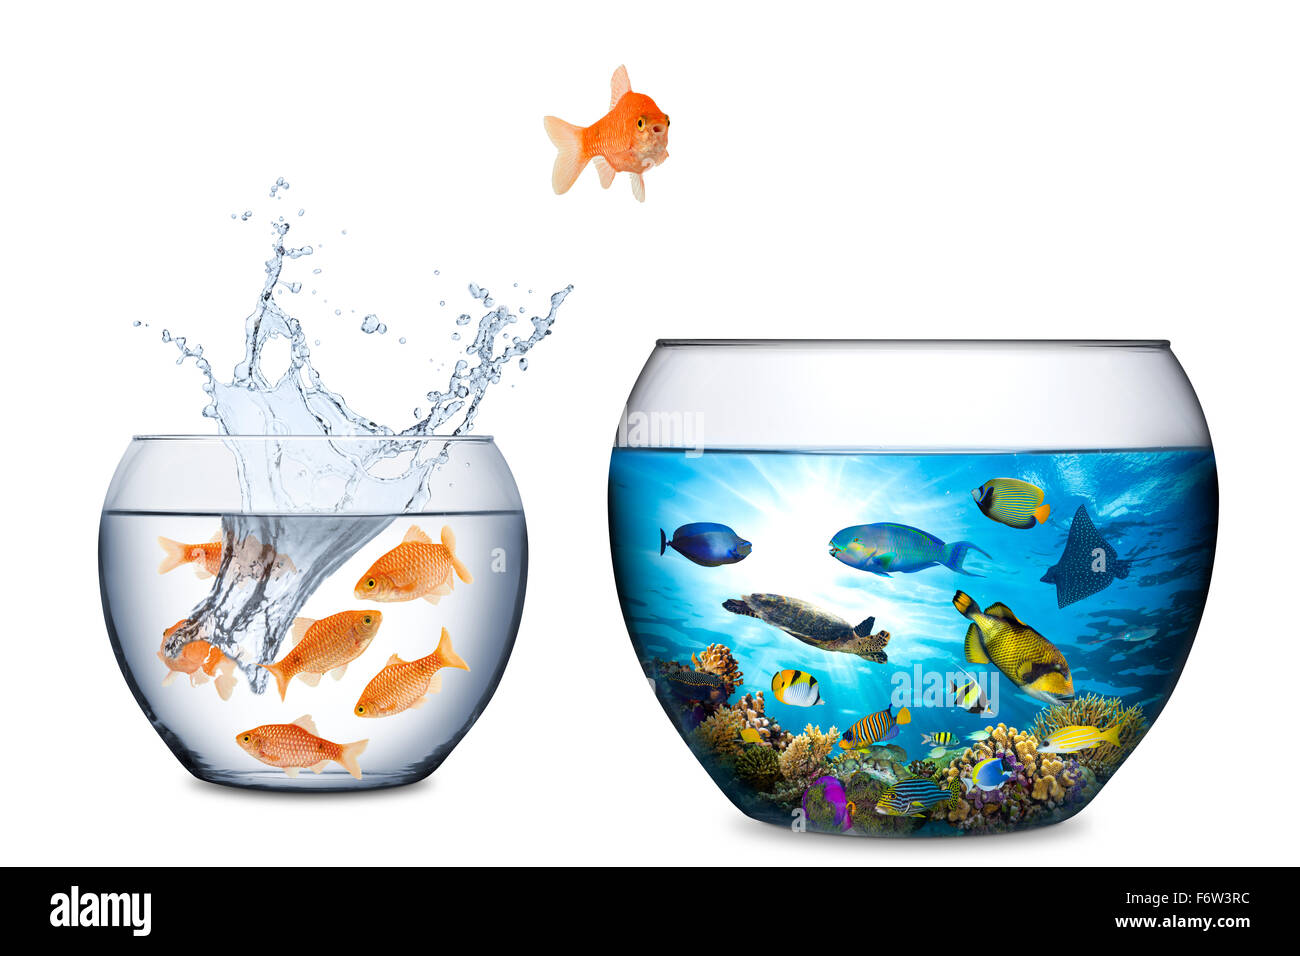 Goldfish concetto di fuga con grande barriera corallina fishbowl Foto Stock